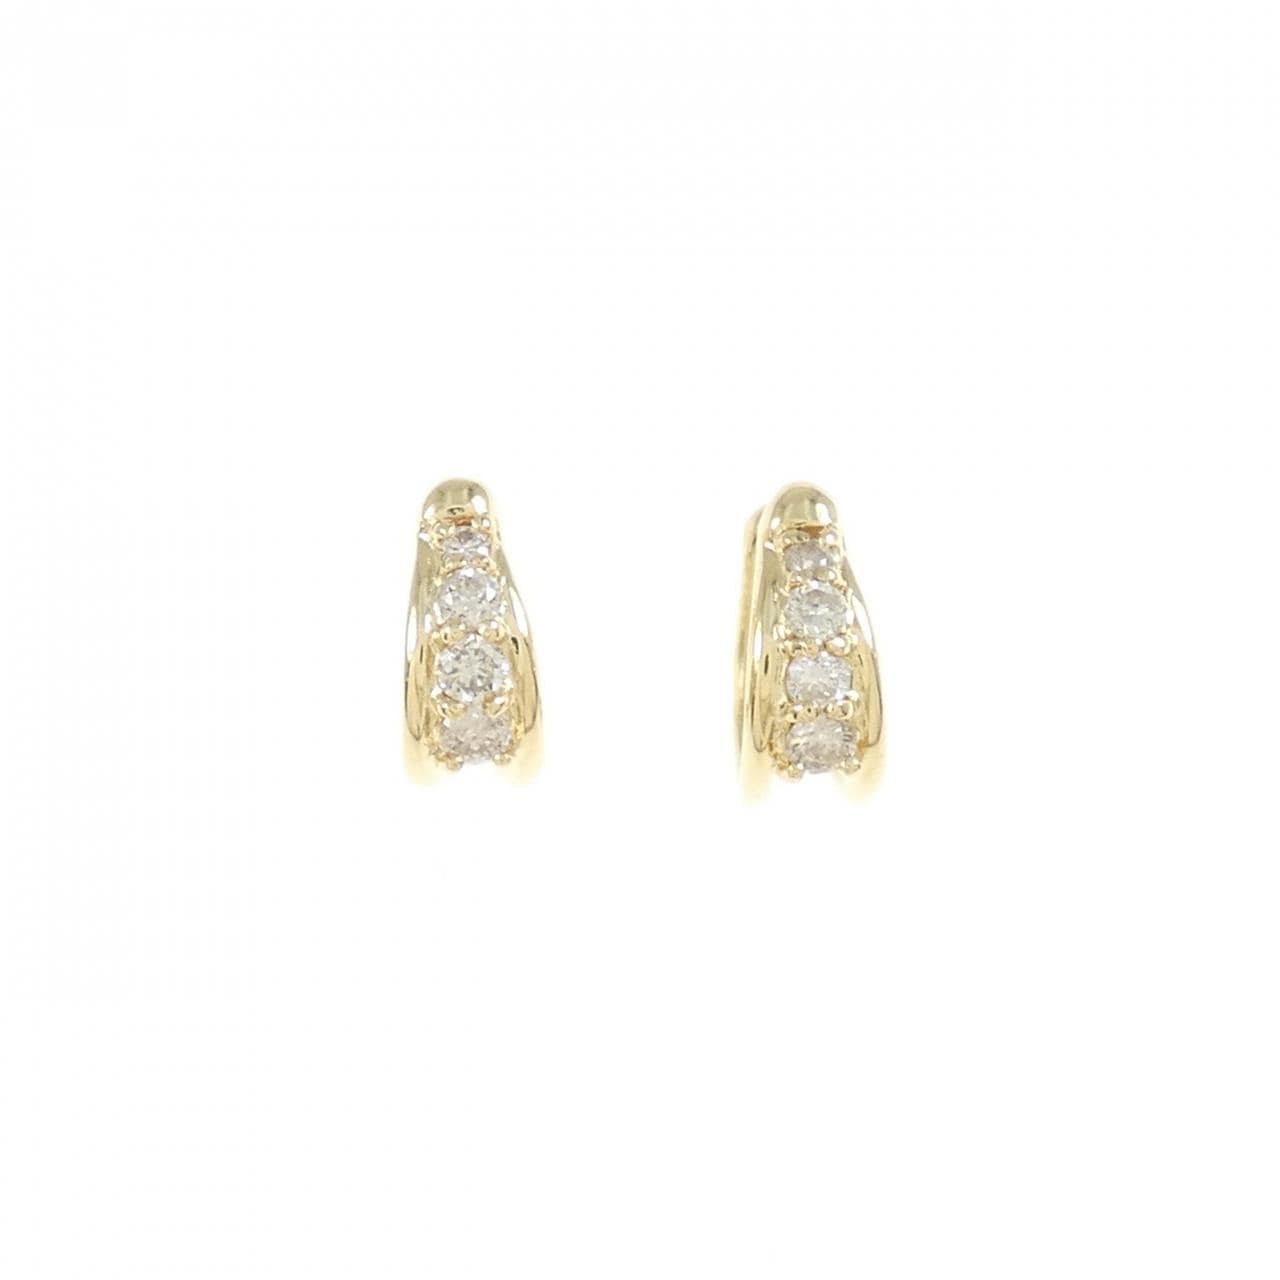 K18YG Diamond Earrings 0.150CT